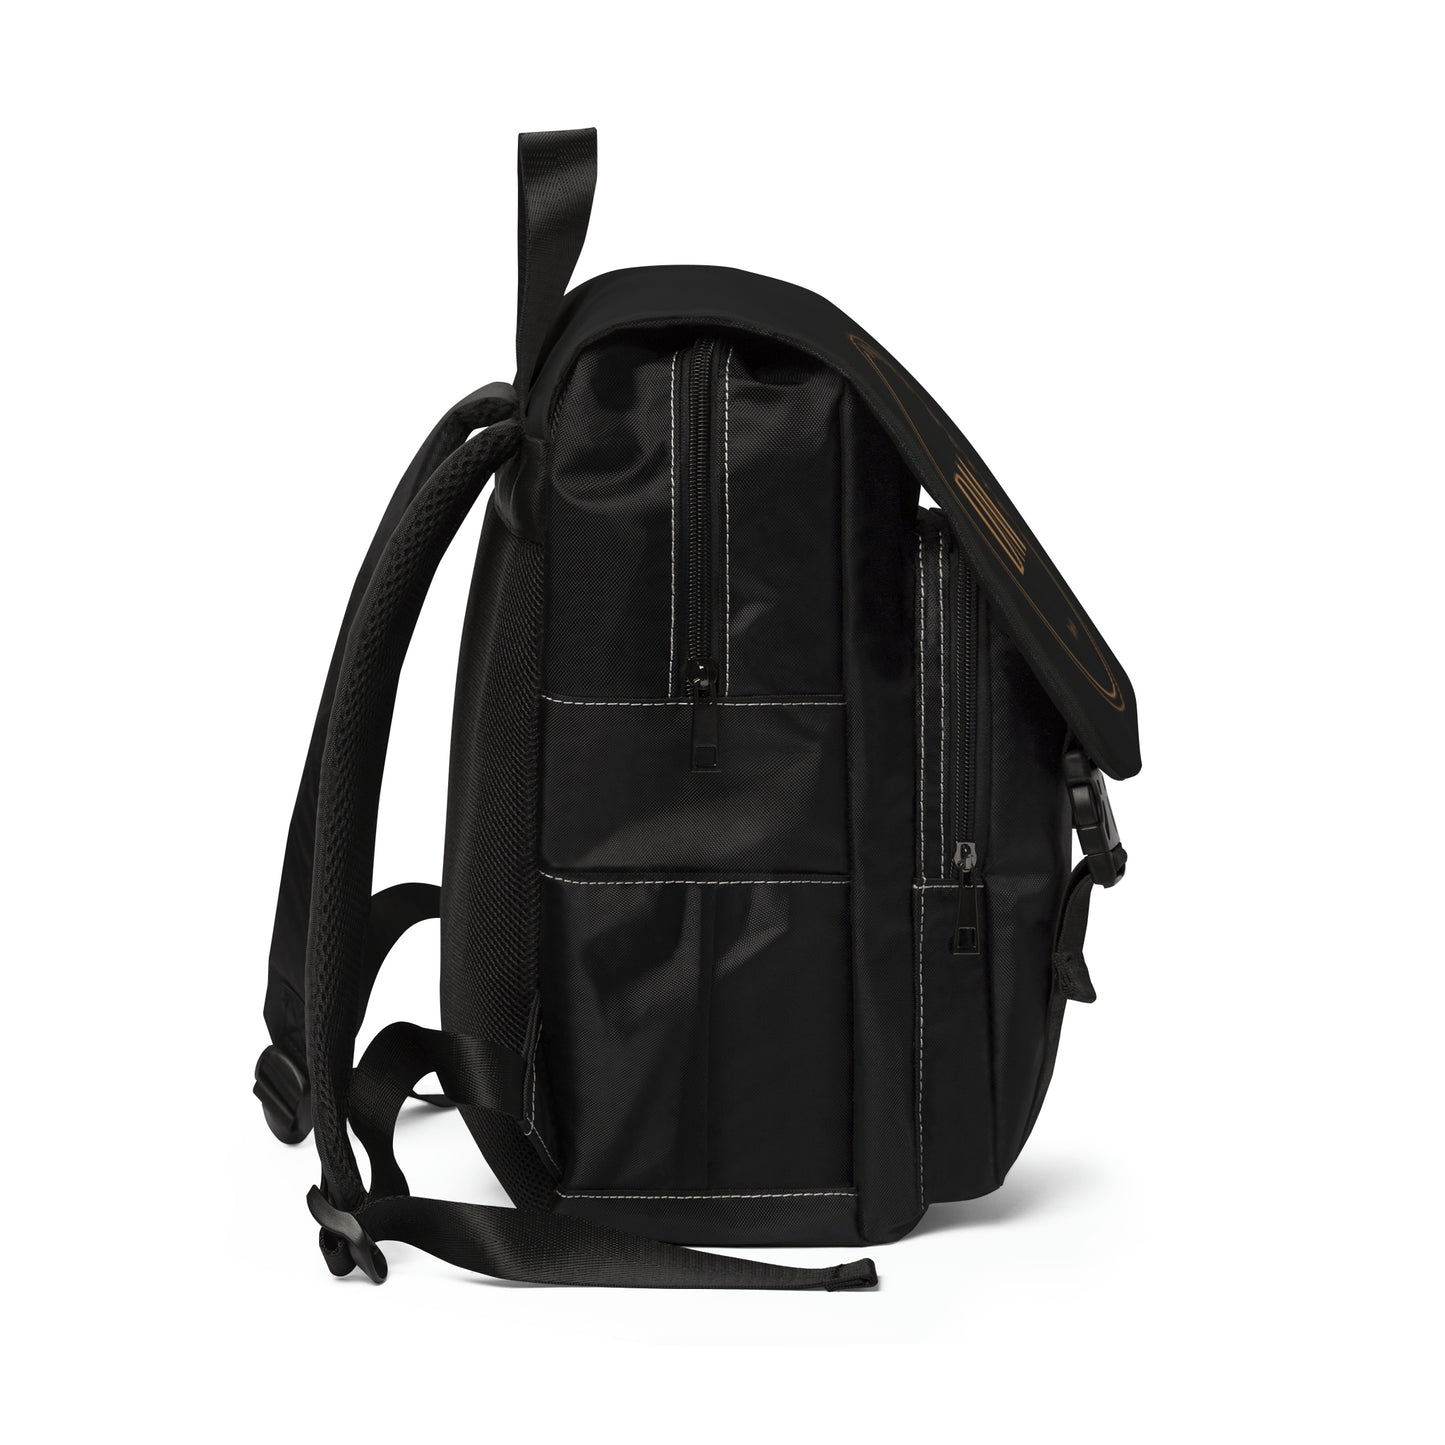 DM Unisex Casual Shoulder Backpack - Black